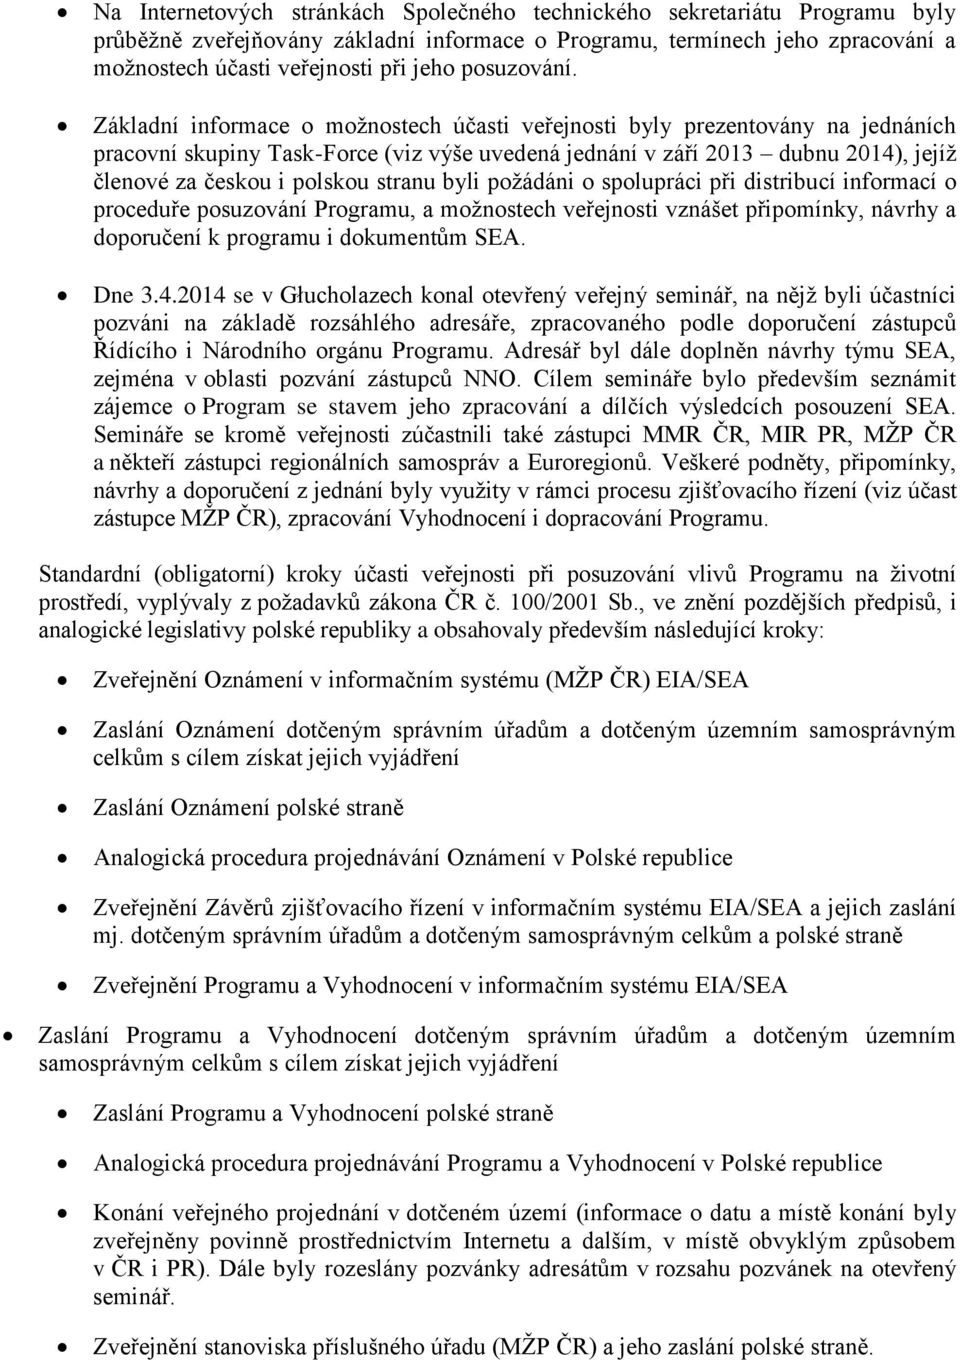 Základní informace o možnostech účasti veřejnosti byly prezentovány na jednáních pracovní skupiny Task-Force (viz výše uvedená jednání v září 2013 dubnu 2014), jejíž členové za českou i polskou